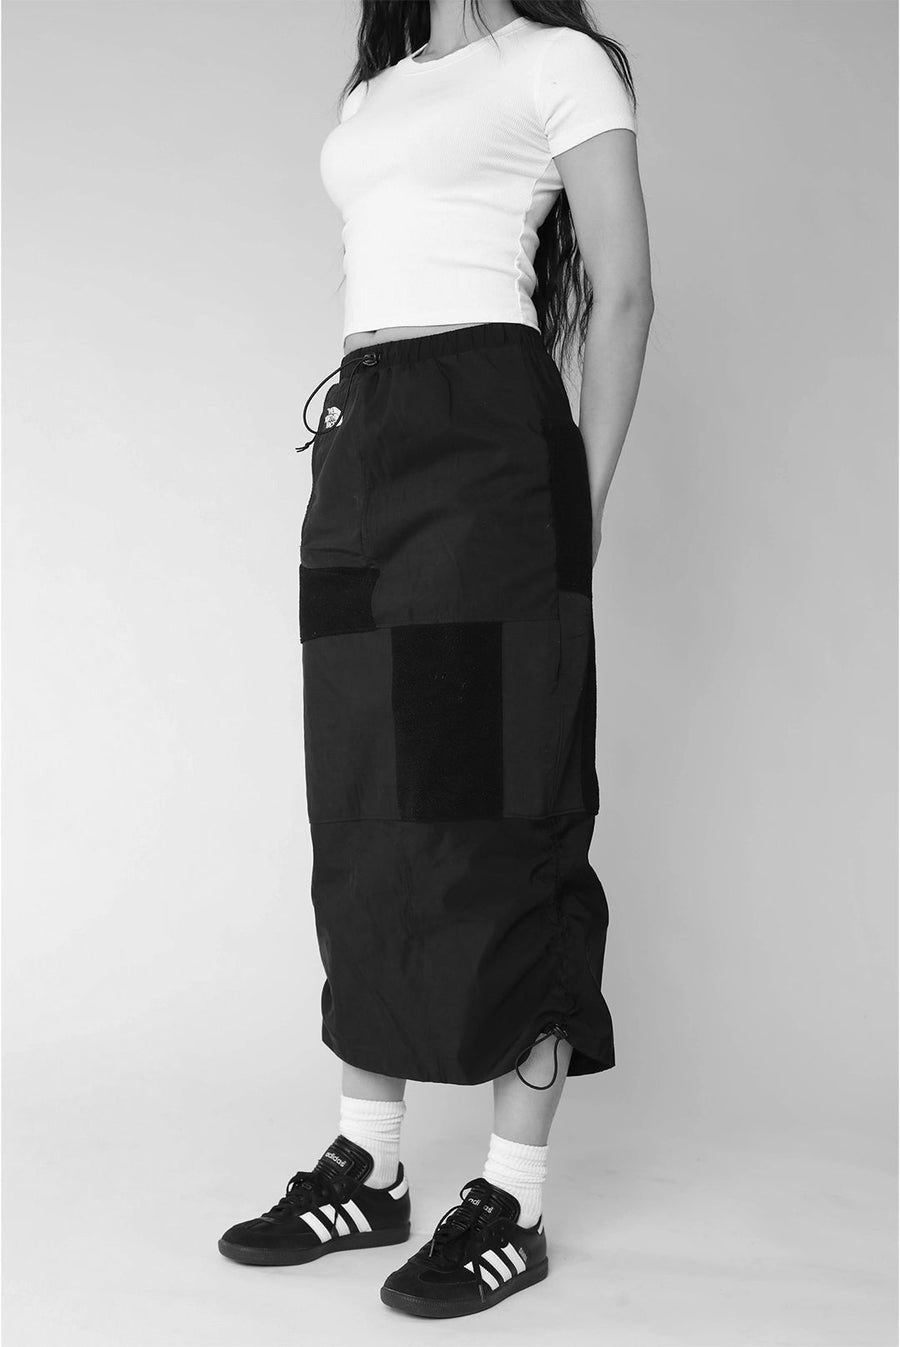 Rework North Face Fleece Long Skirt - XS